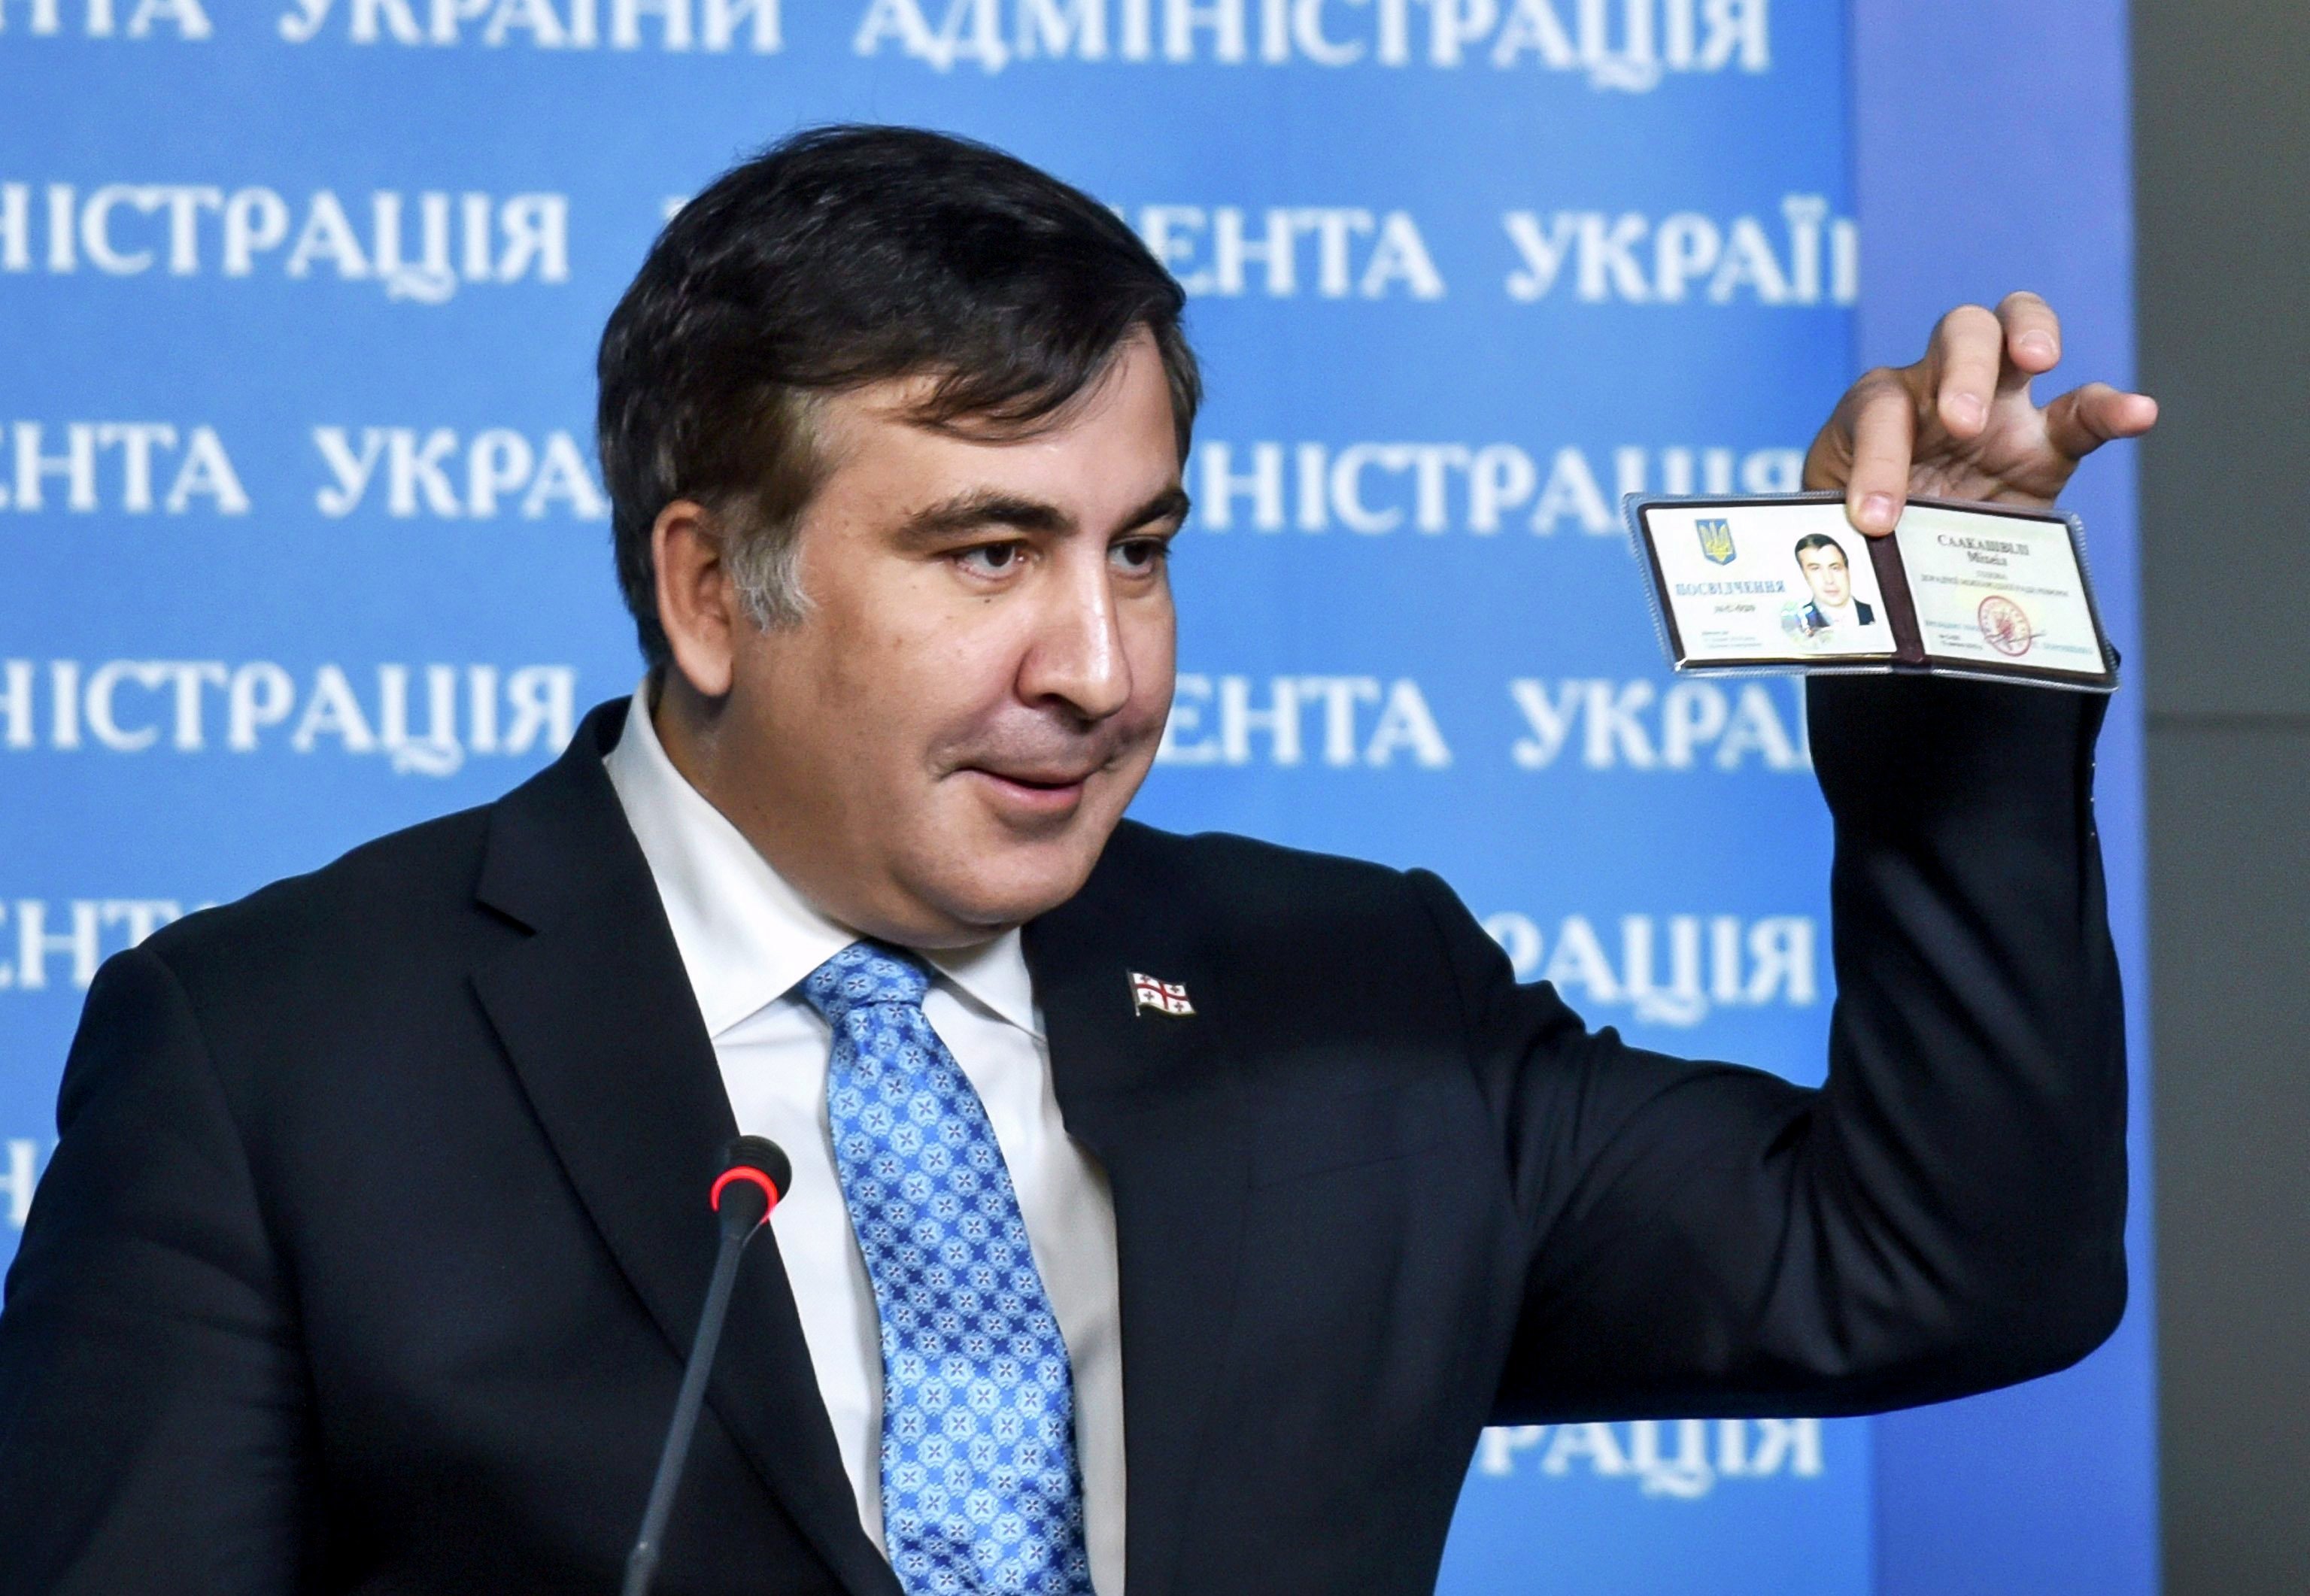 Зеленский вернул Саакашвили украинское гражданство